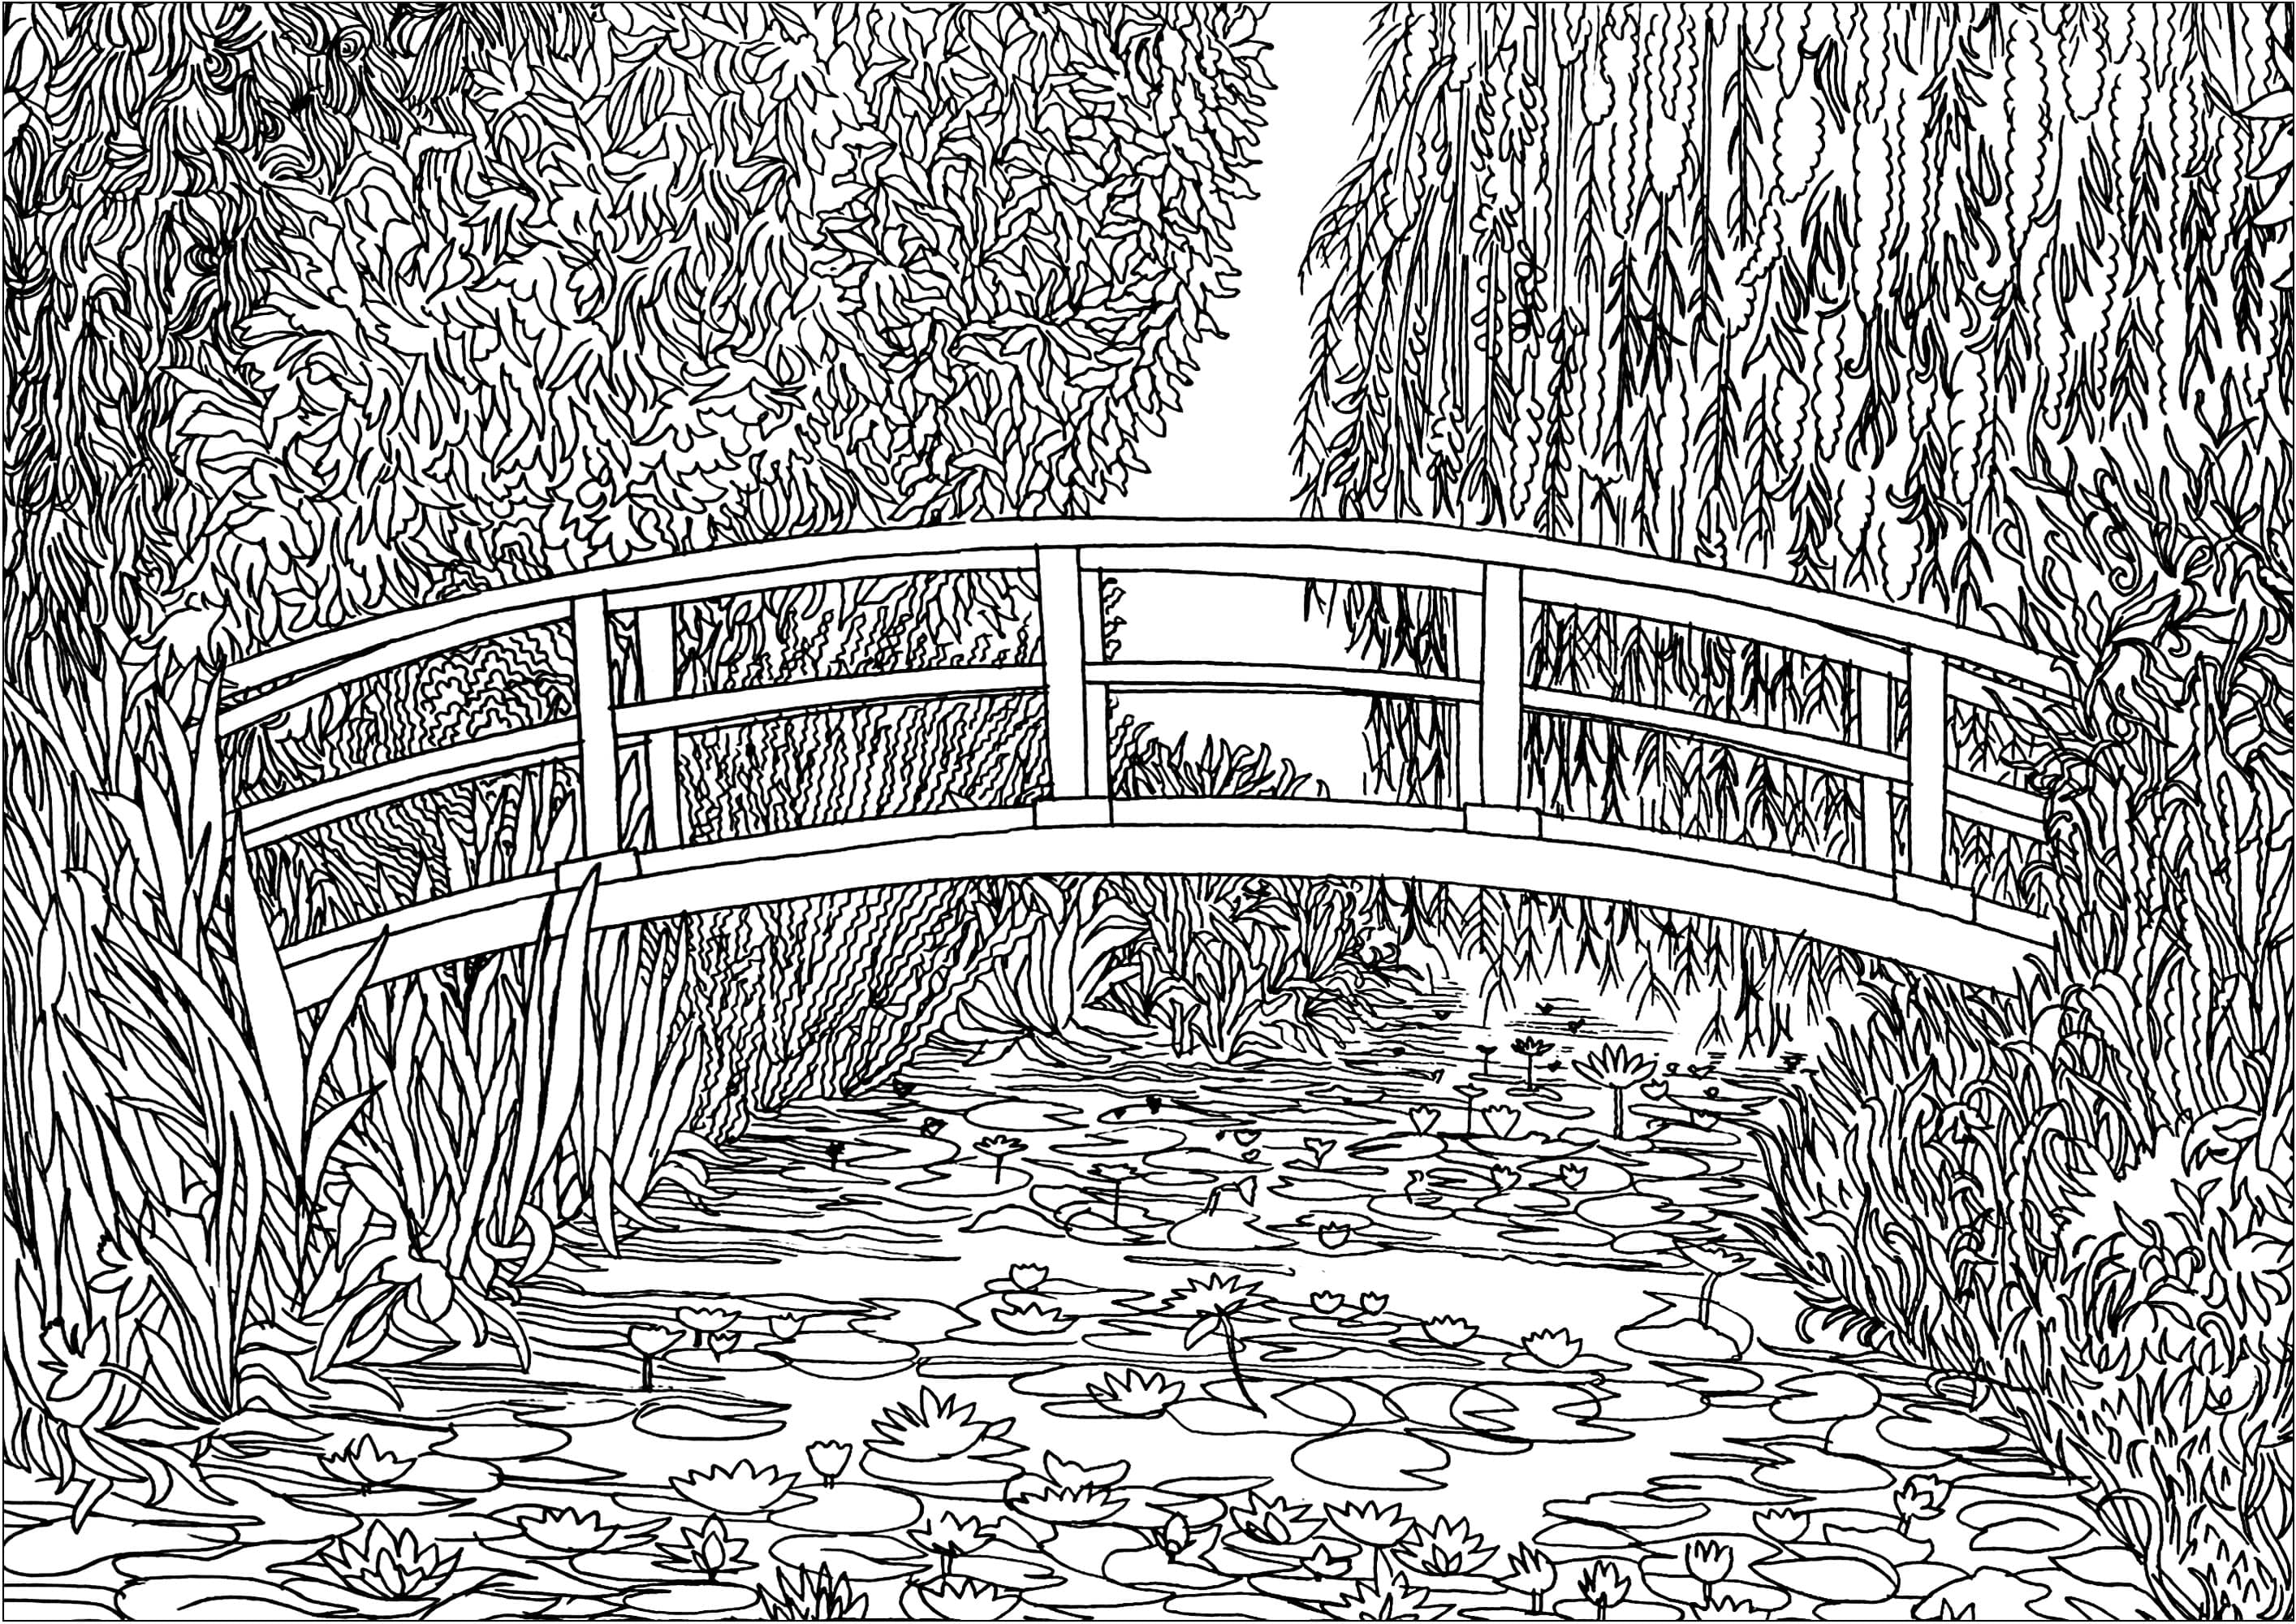 Coloriage créé à partir de 'Le bassin aux nymphéas' (1899) de Claude Monet. En 1893, Monet, peintre mais aussi horticulteur passionné, achète un terrain avec un étang près de sa propriété de Giverny, dans l'intention construire quelque chose 'pour le plaisir des yeux et aussi pour des motifs à peindre'. Le résultat fut sa série de peintures représentant ce magnifique étang de nénuphars.